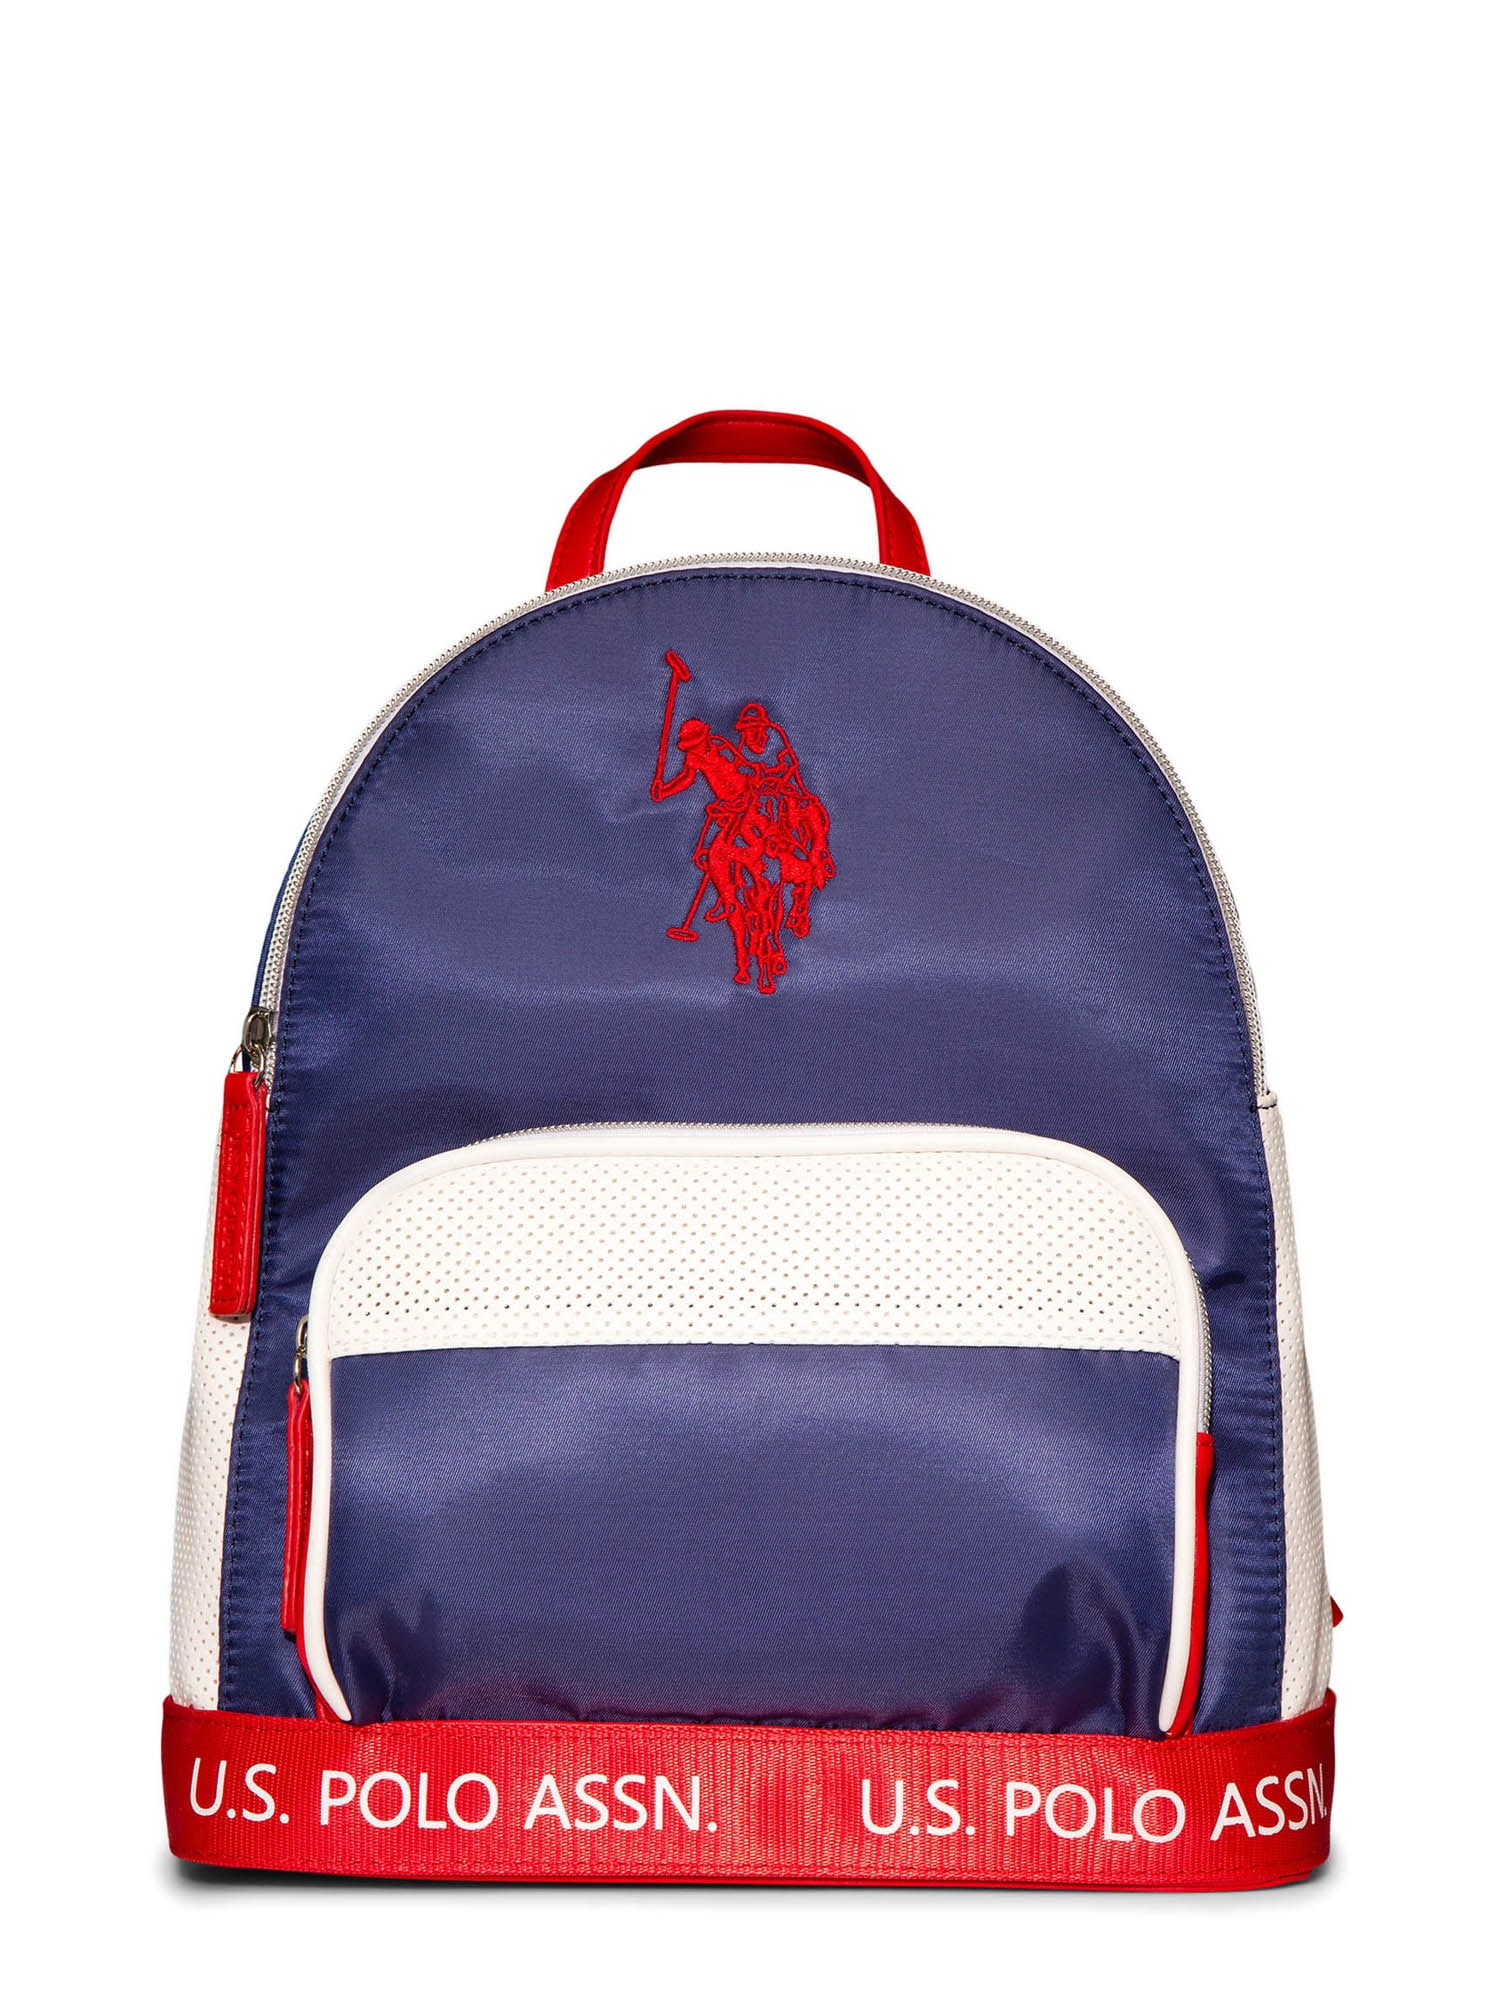 U.S. Polo Assn. Women's Sport Navy Red Backpack - Walmart.com